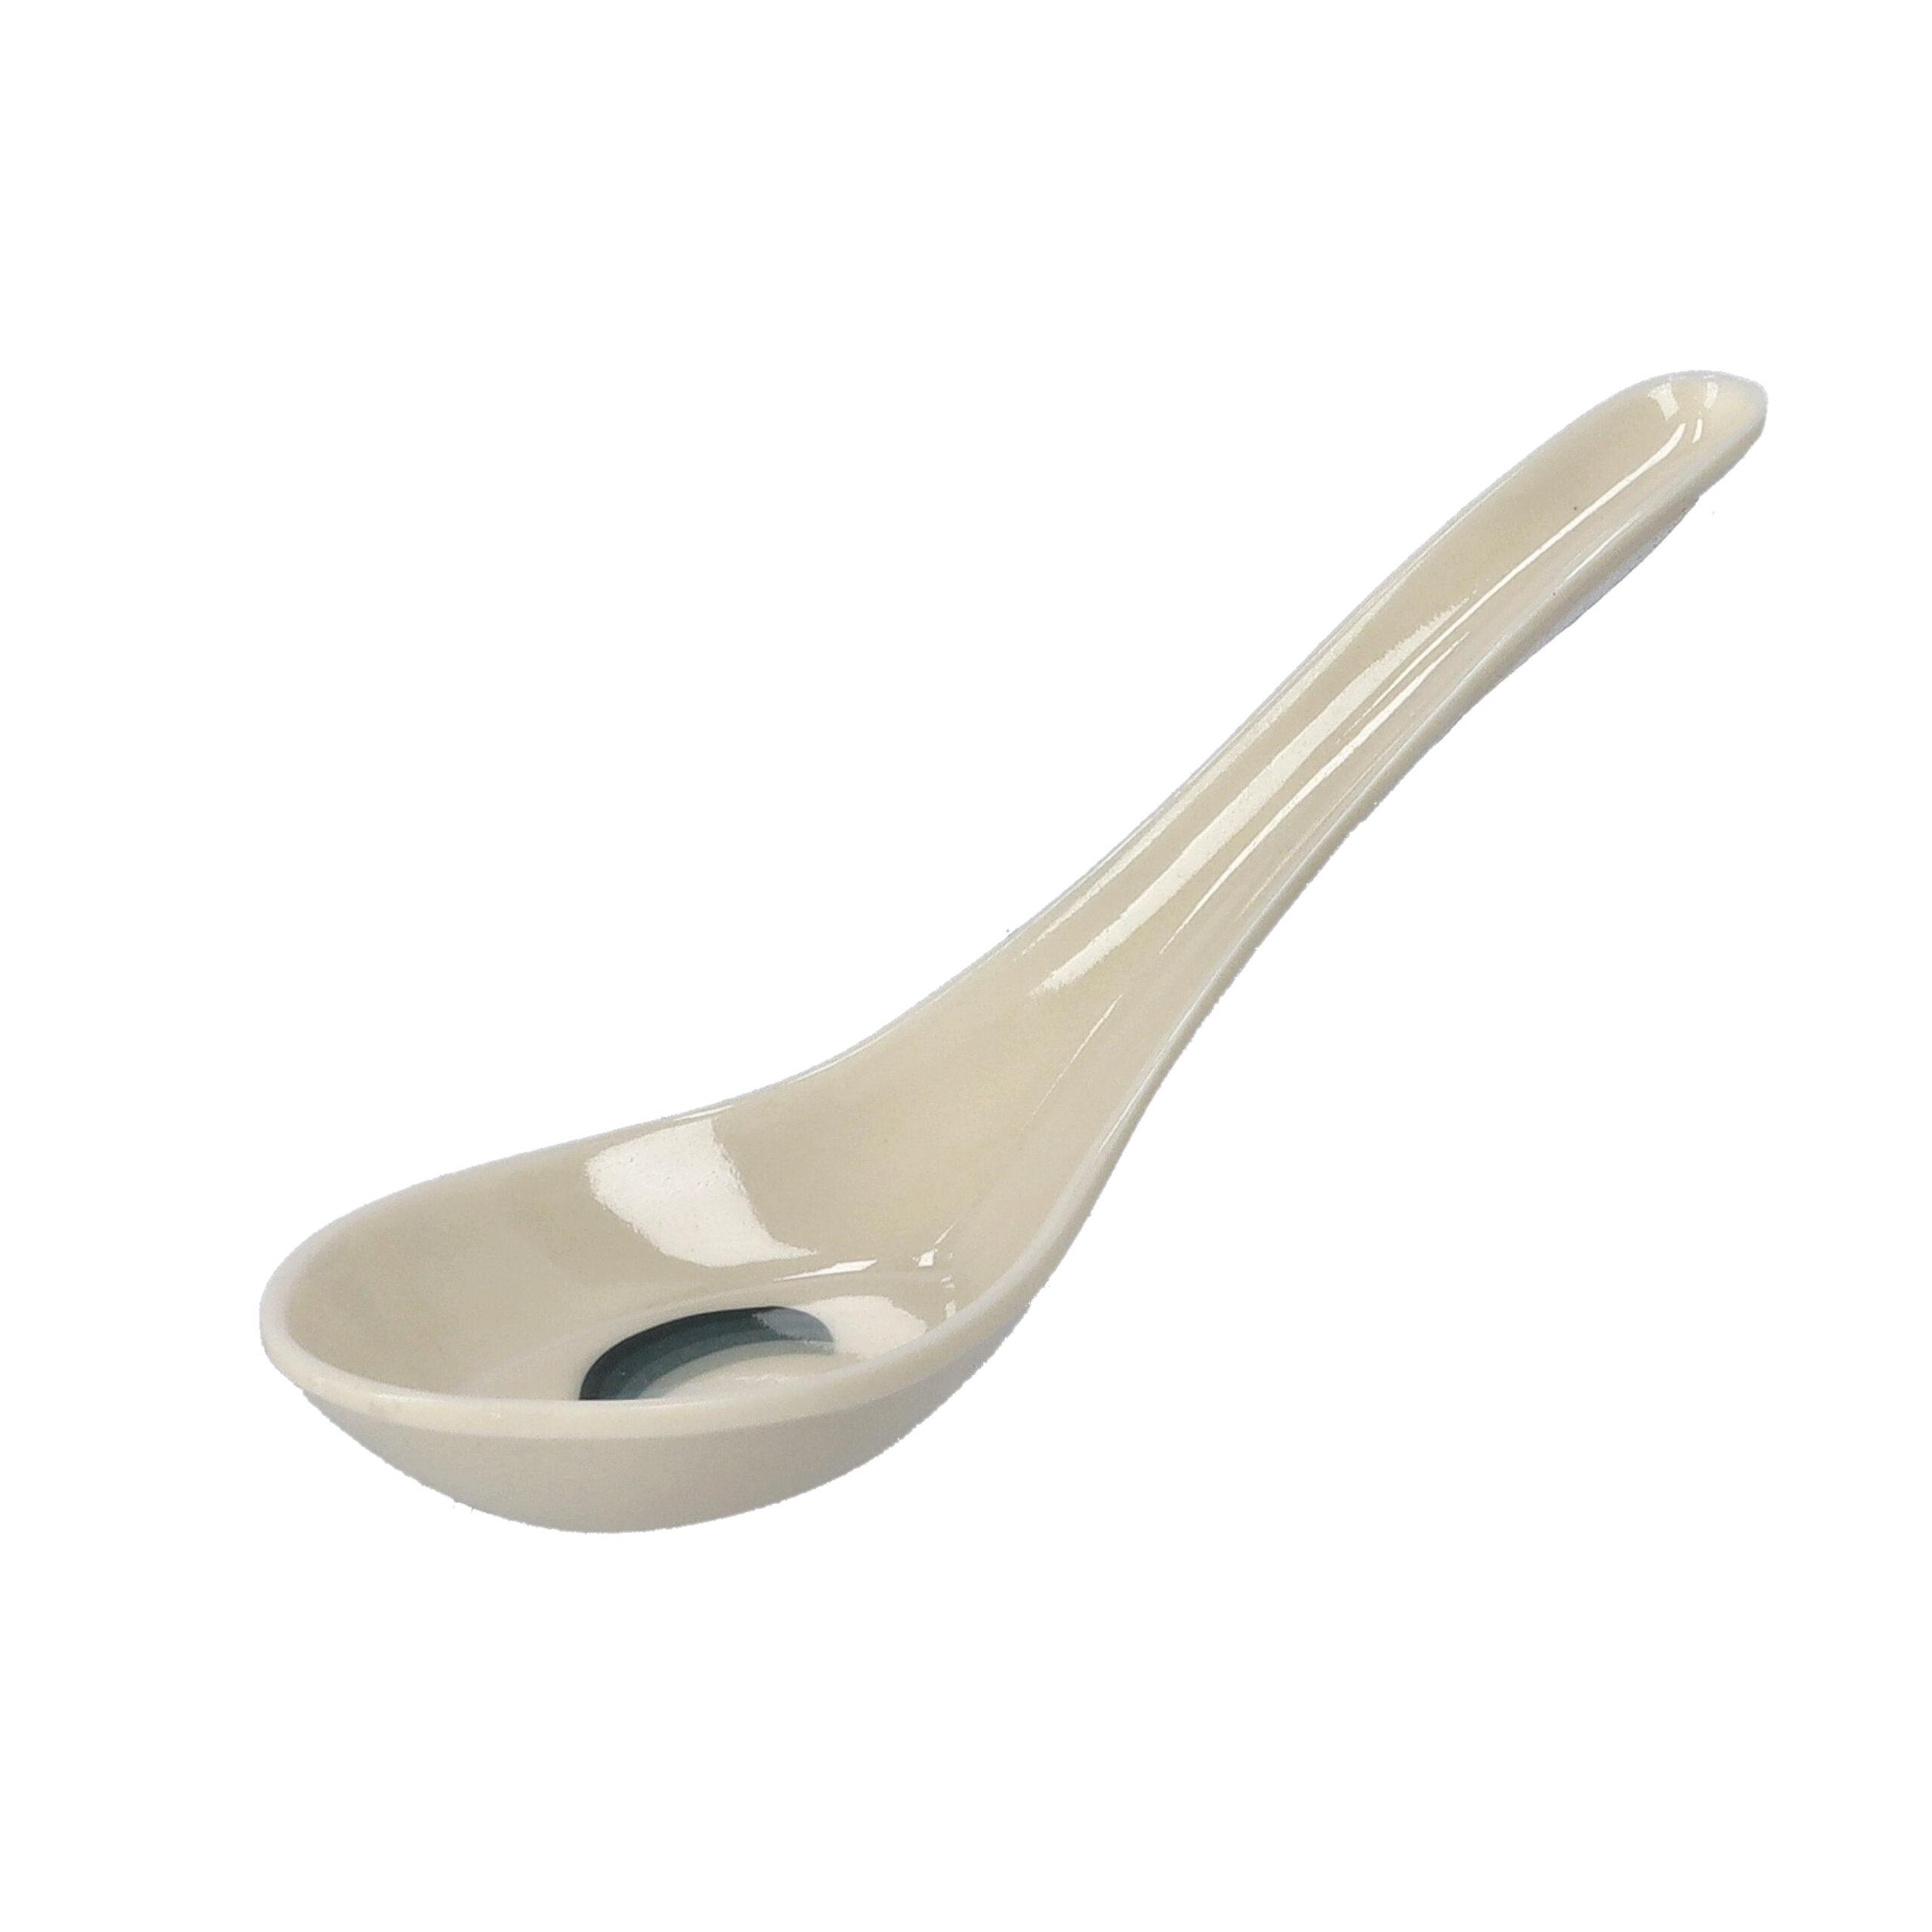 ملعقة تقديم طعام ميلامين 5.5 بوصة Royalford - 5.5" Professional Melamine Spoon - Cooking And Serving Spoon With Grip Handle